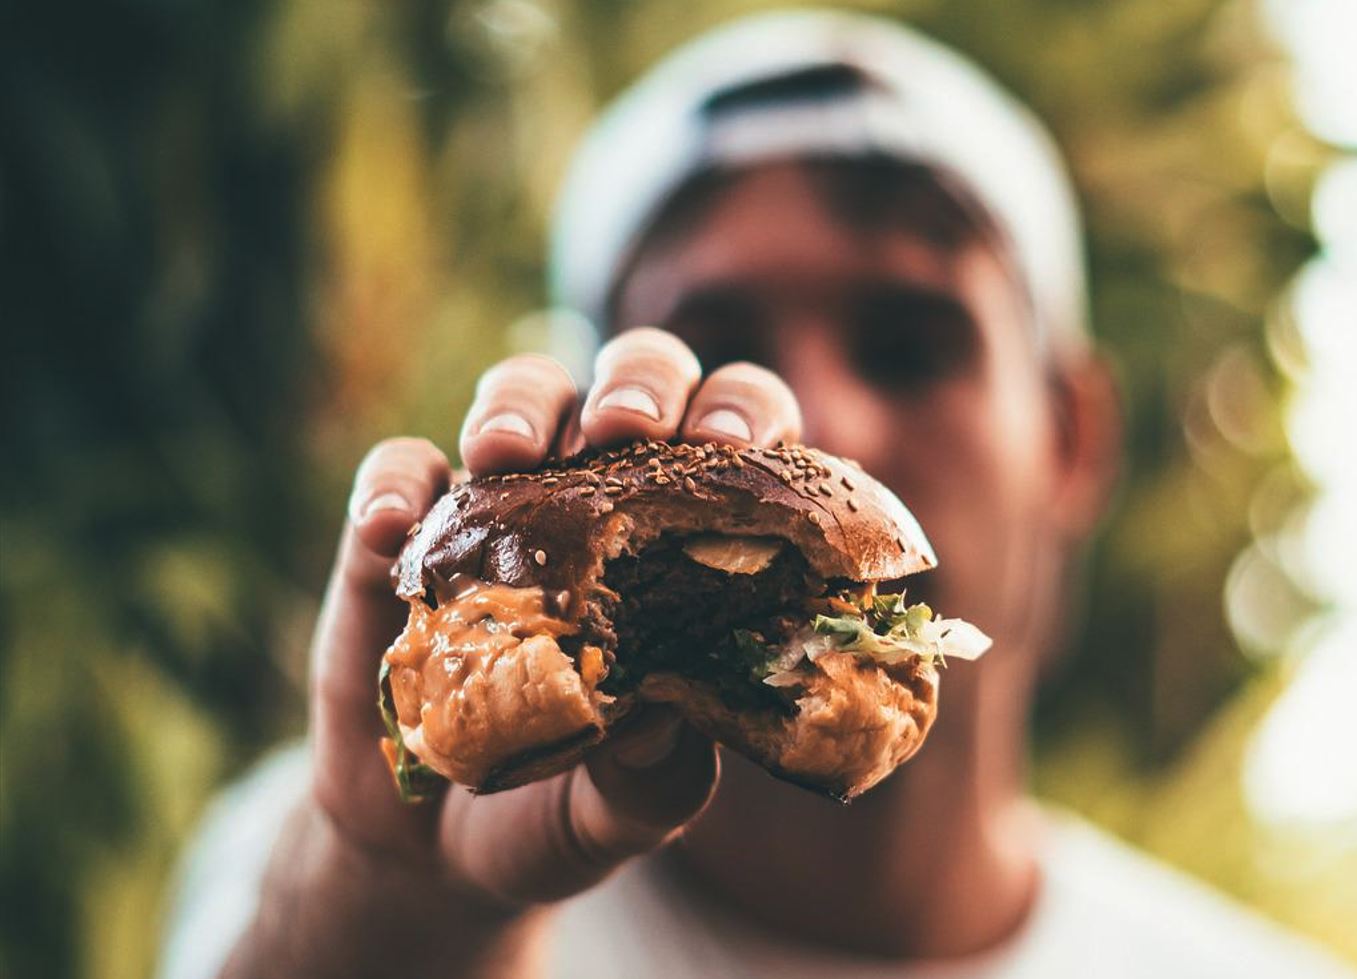 Man showing half eaten burger